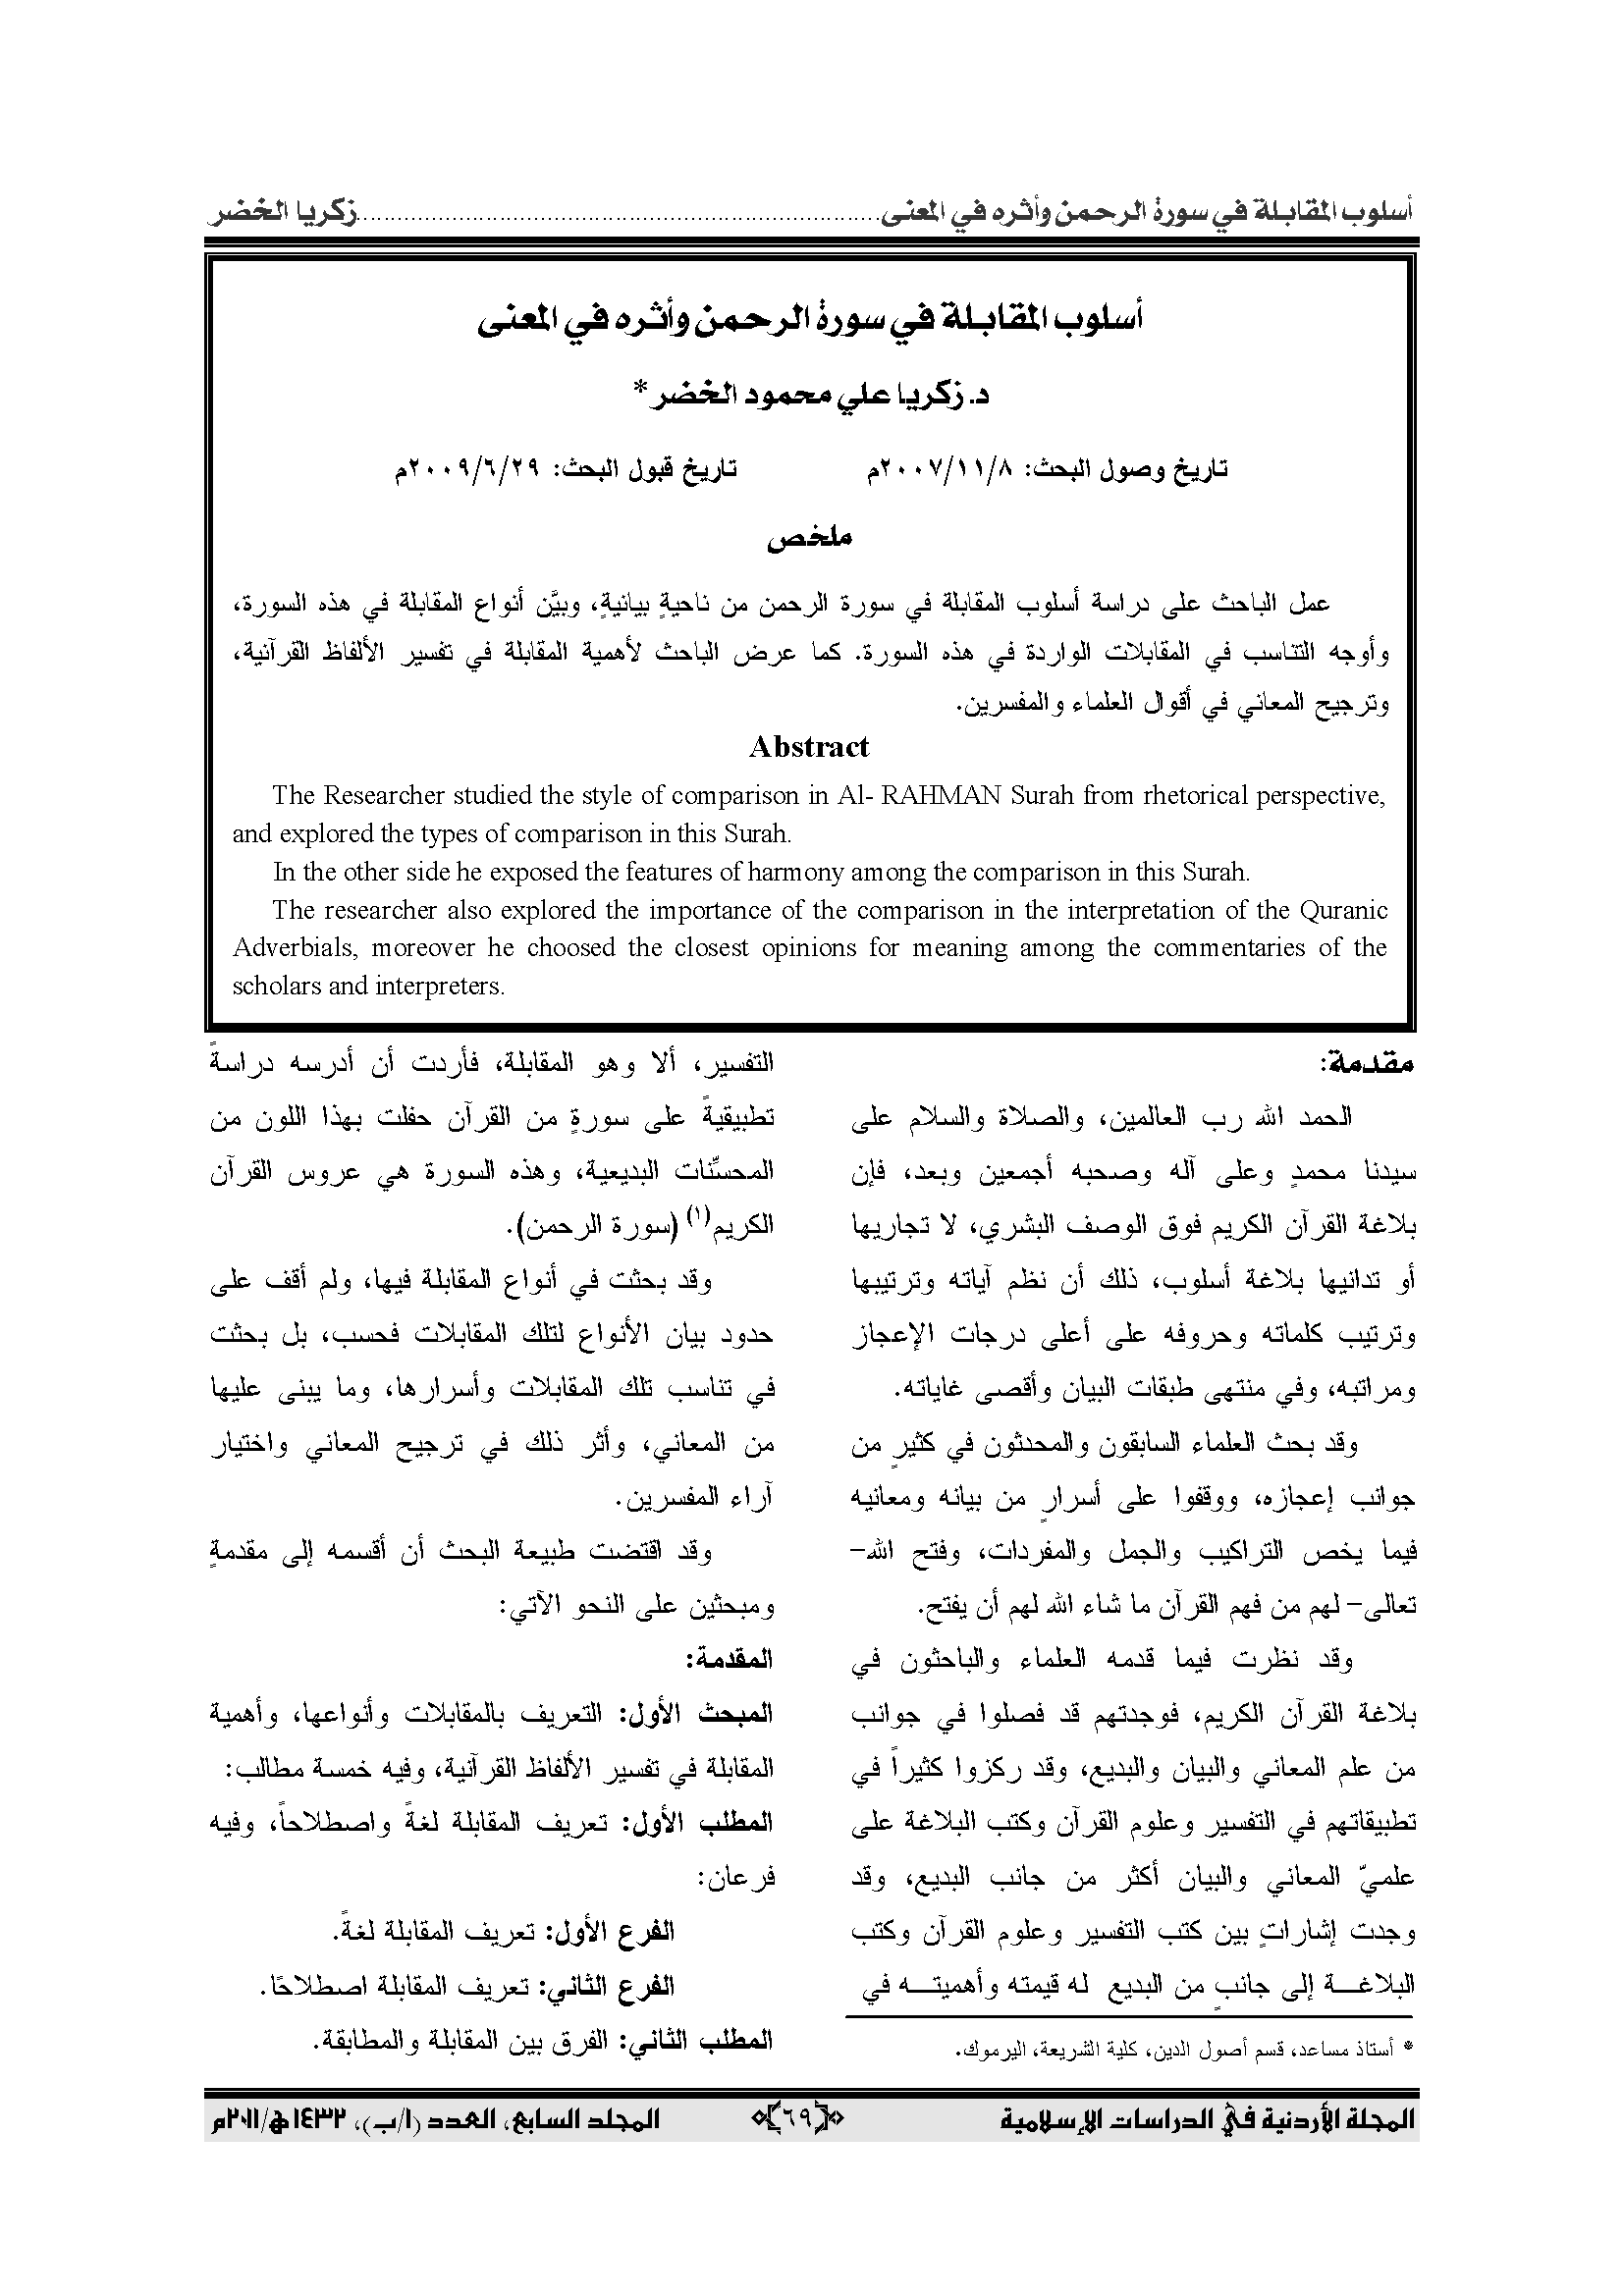 تحميل كتاب أسلوب المقابلة في سورة الرحمن وأثره في المعنى لـِ: الدكتور زكريا علي محمود الخضر